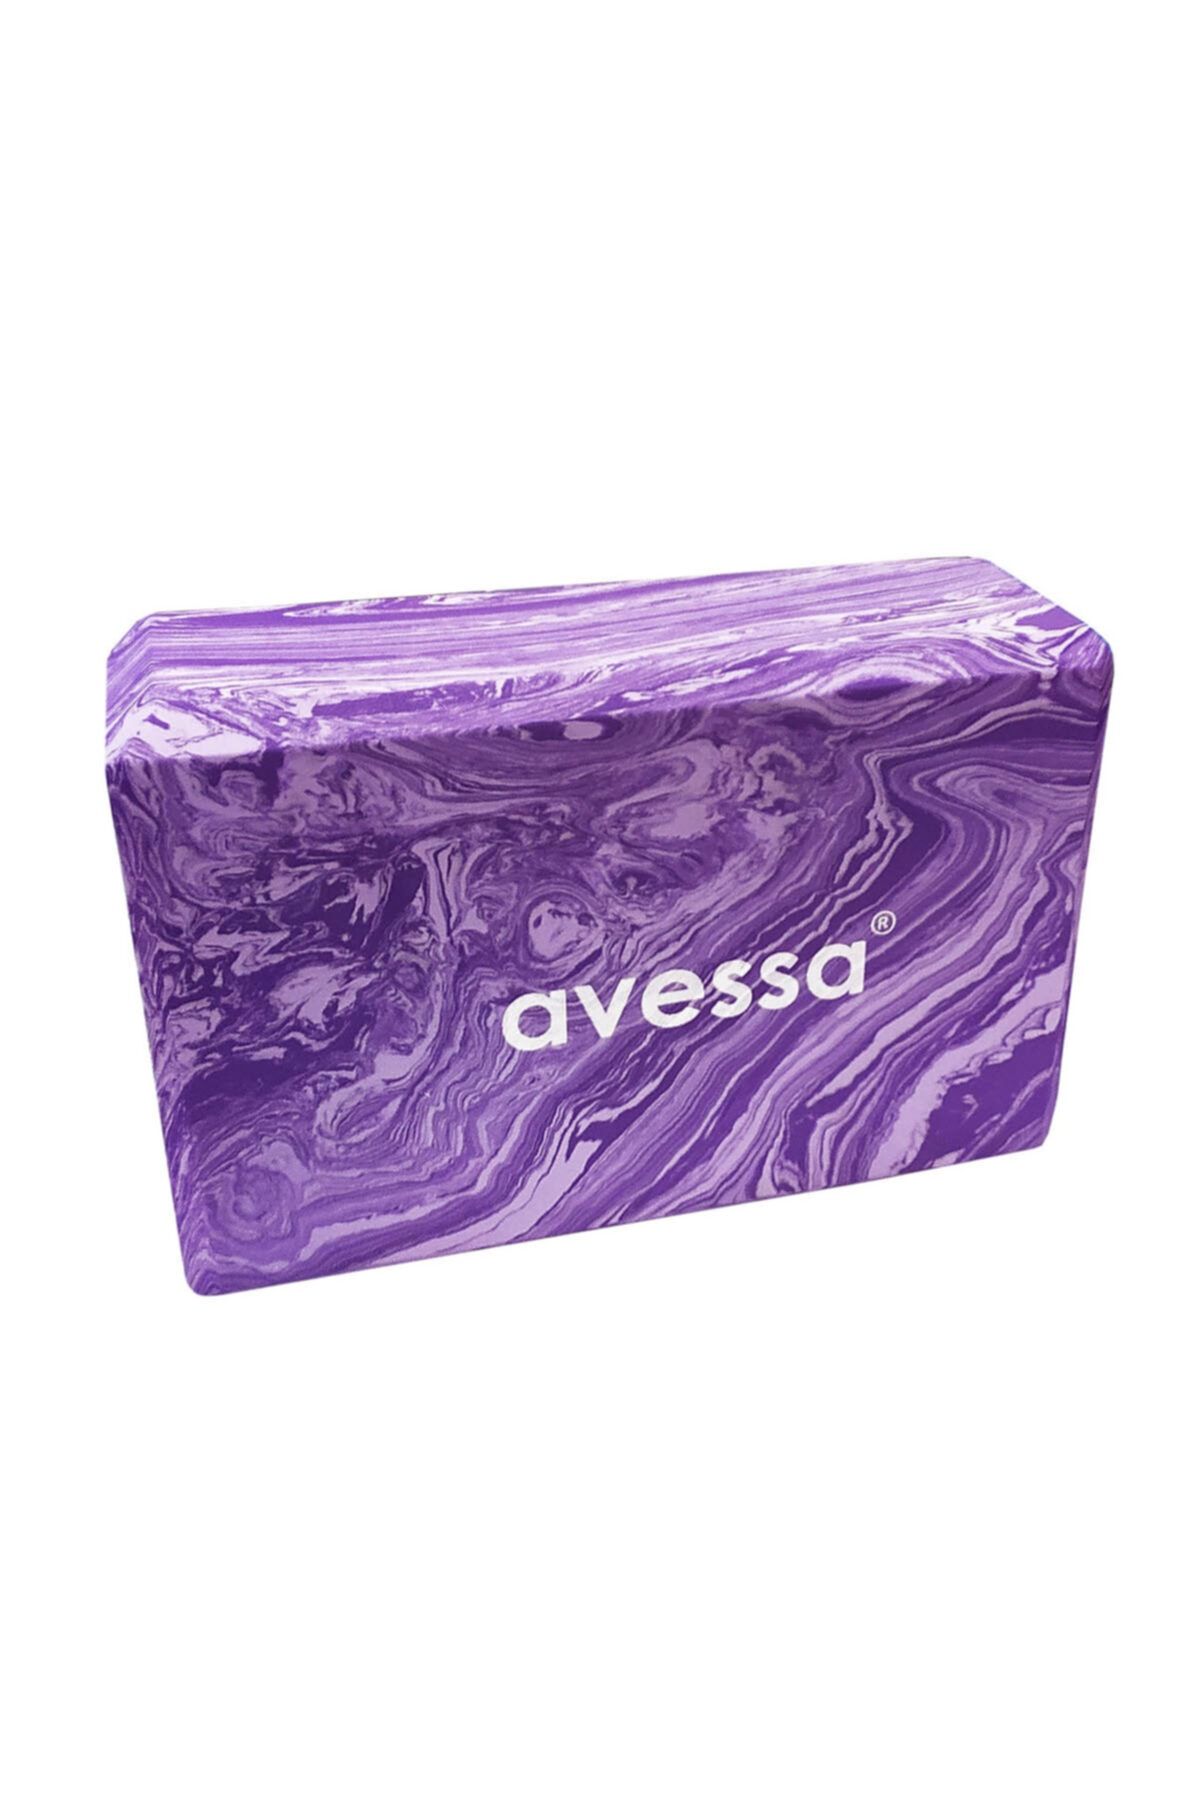 Avessa Yoga Blok Mor Mb-33010